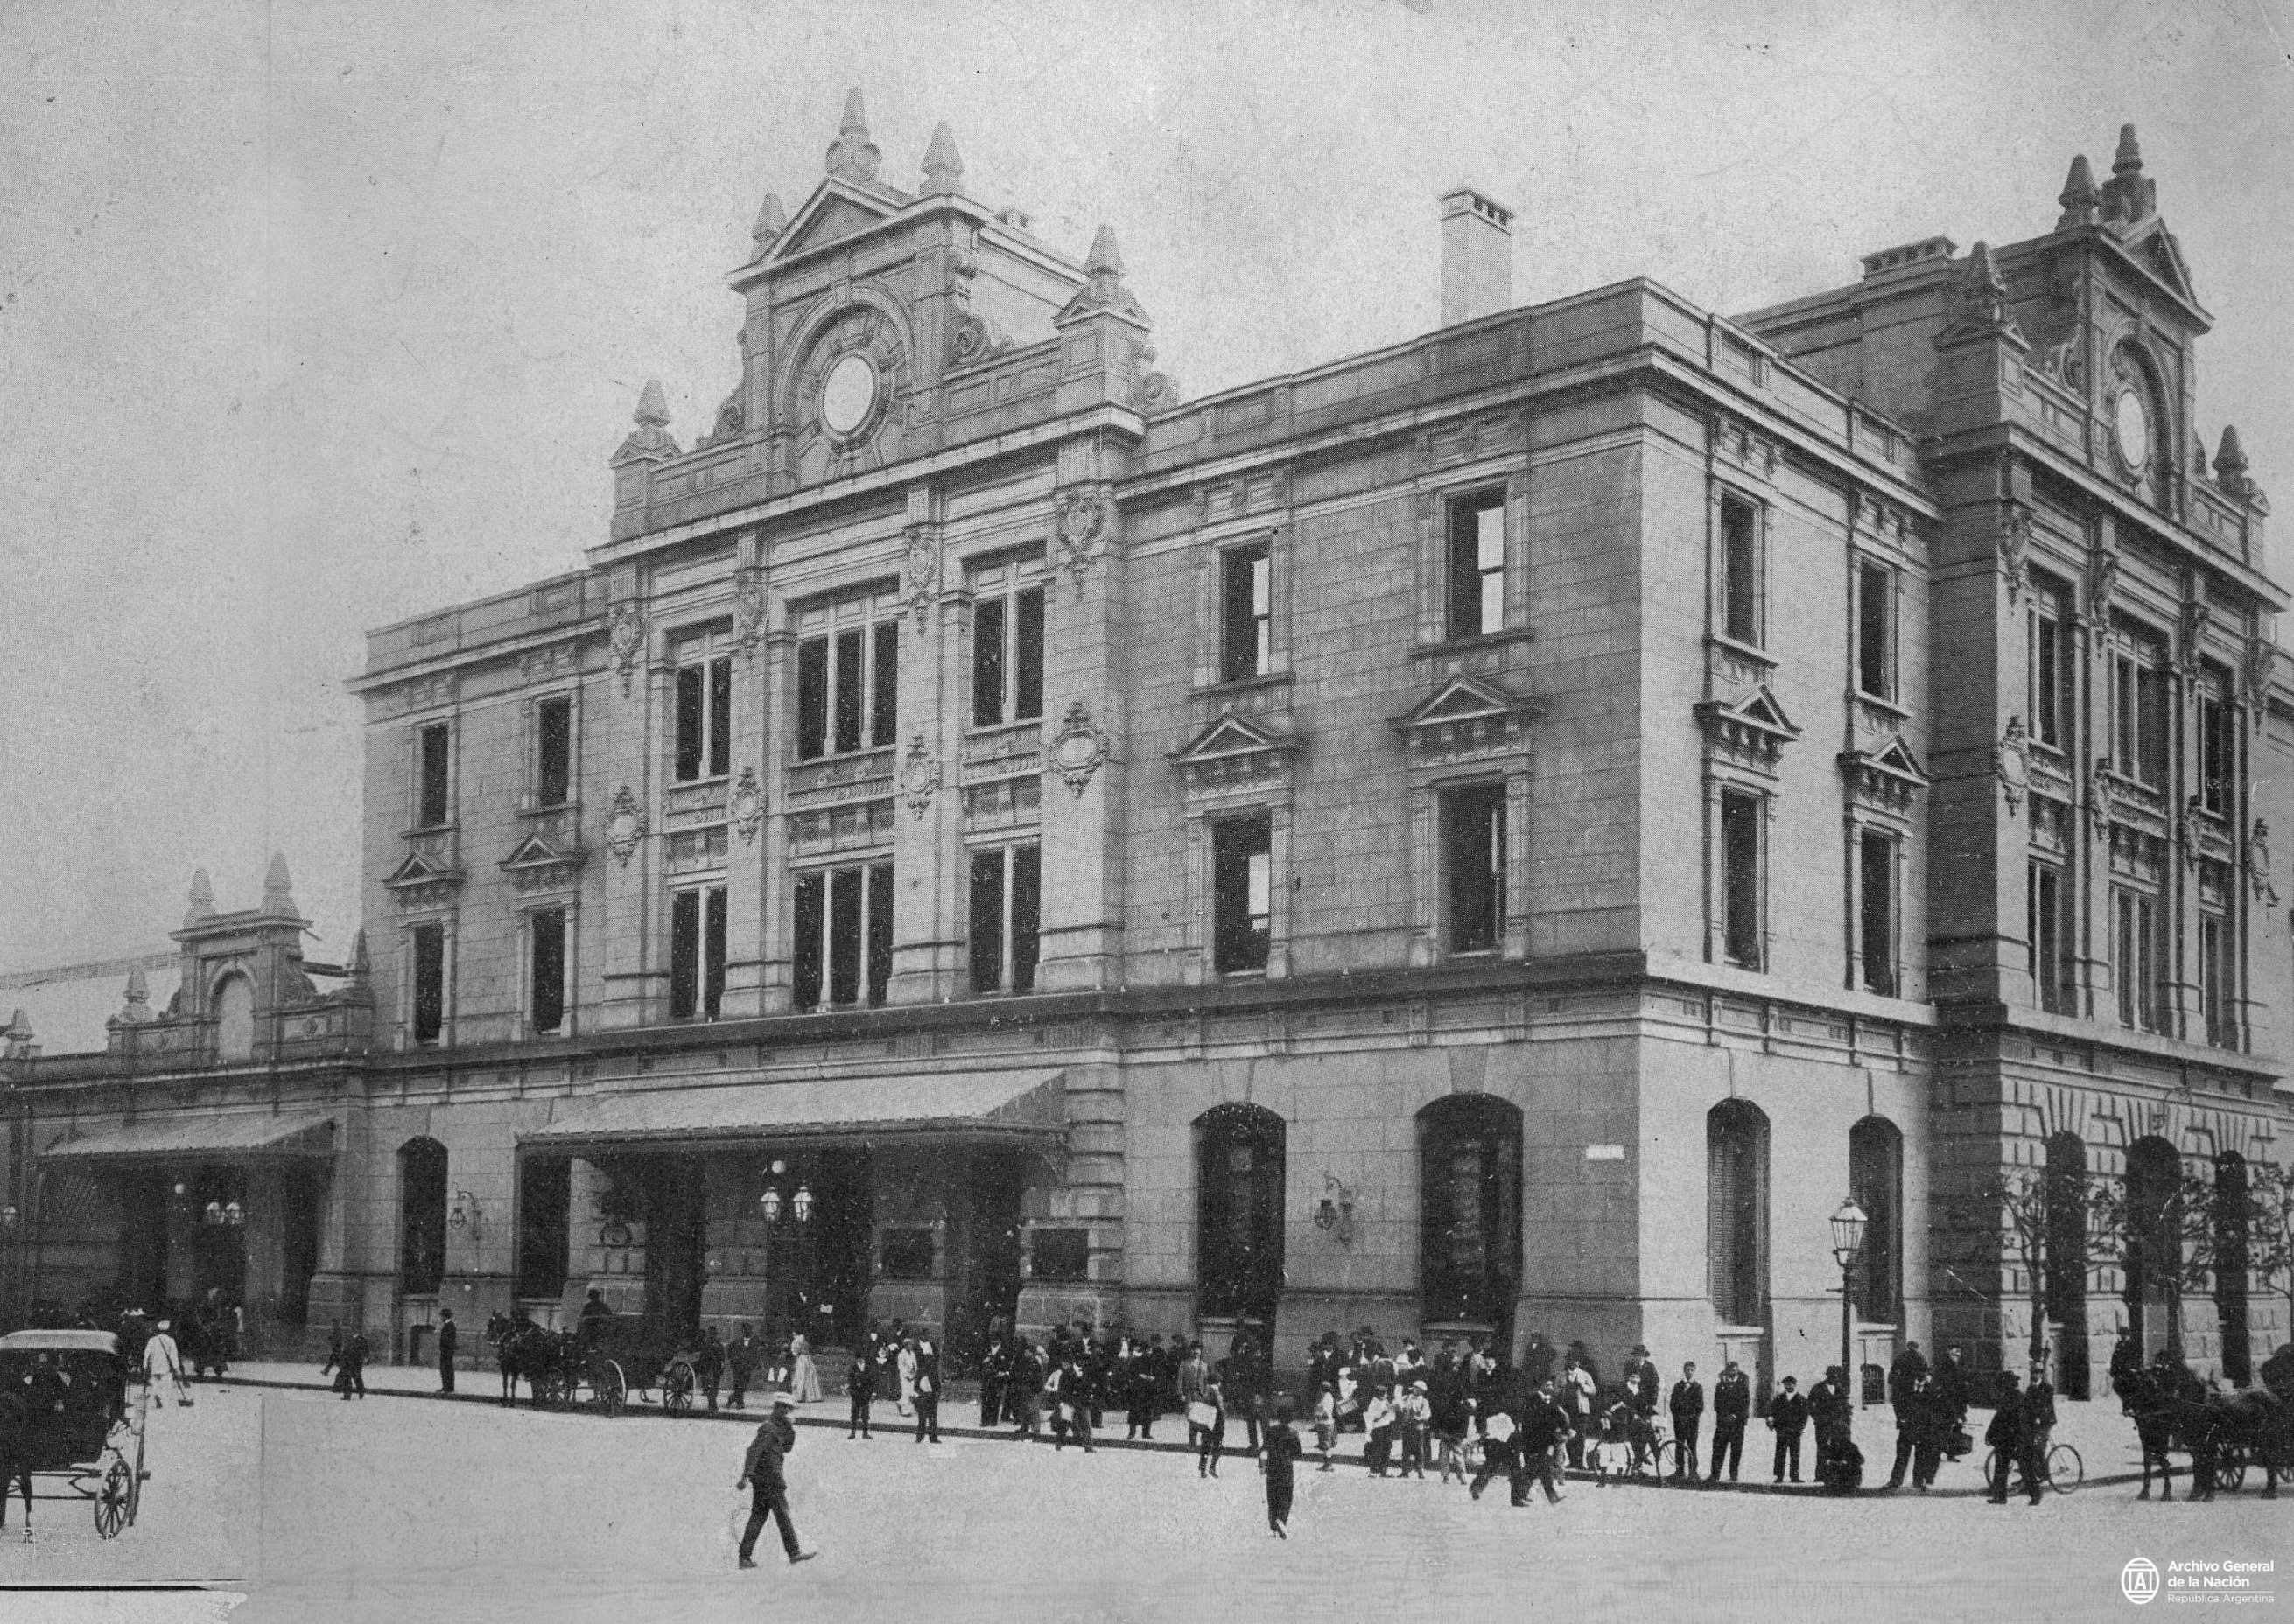 La estación “supo conservar la unidad estilística" (Archivo General de la Nación)